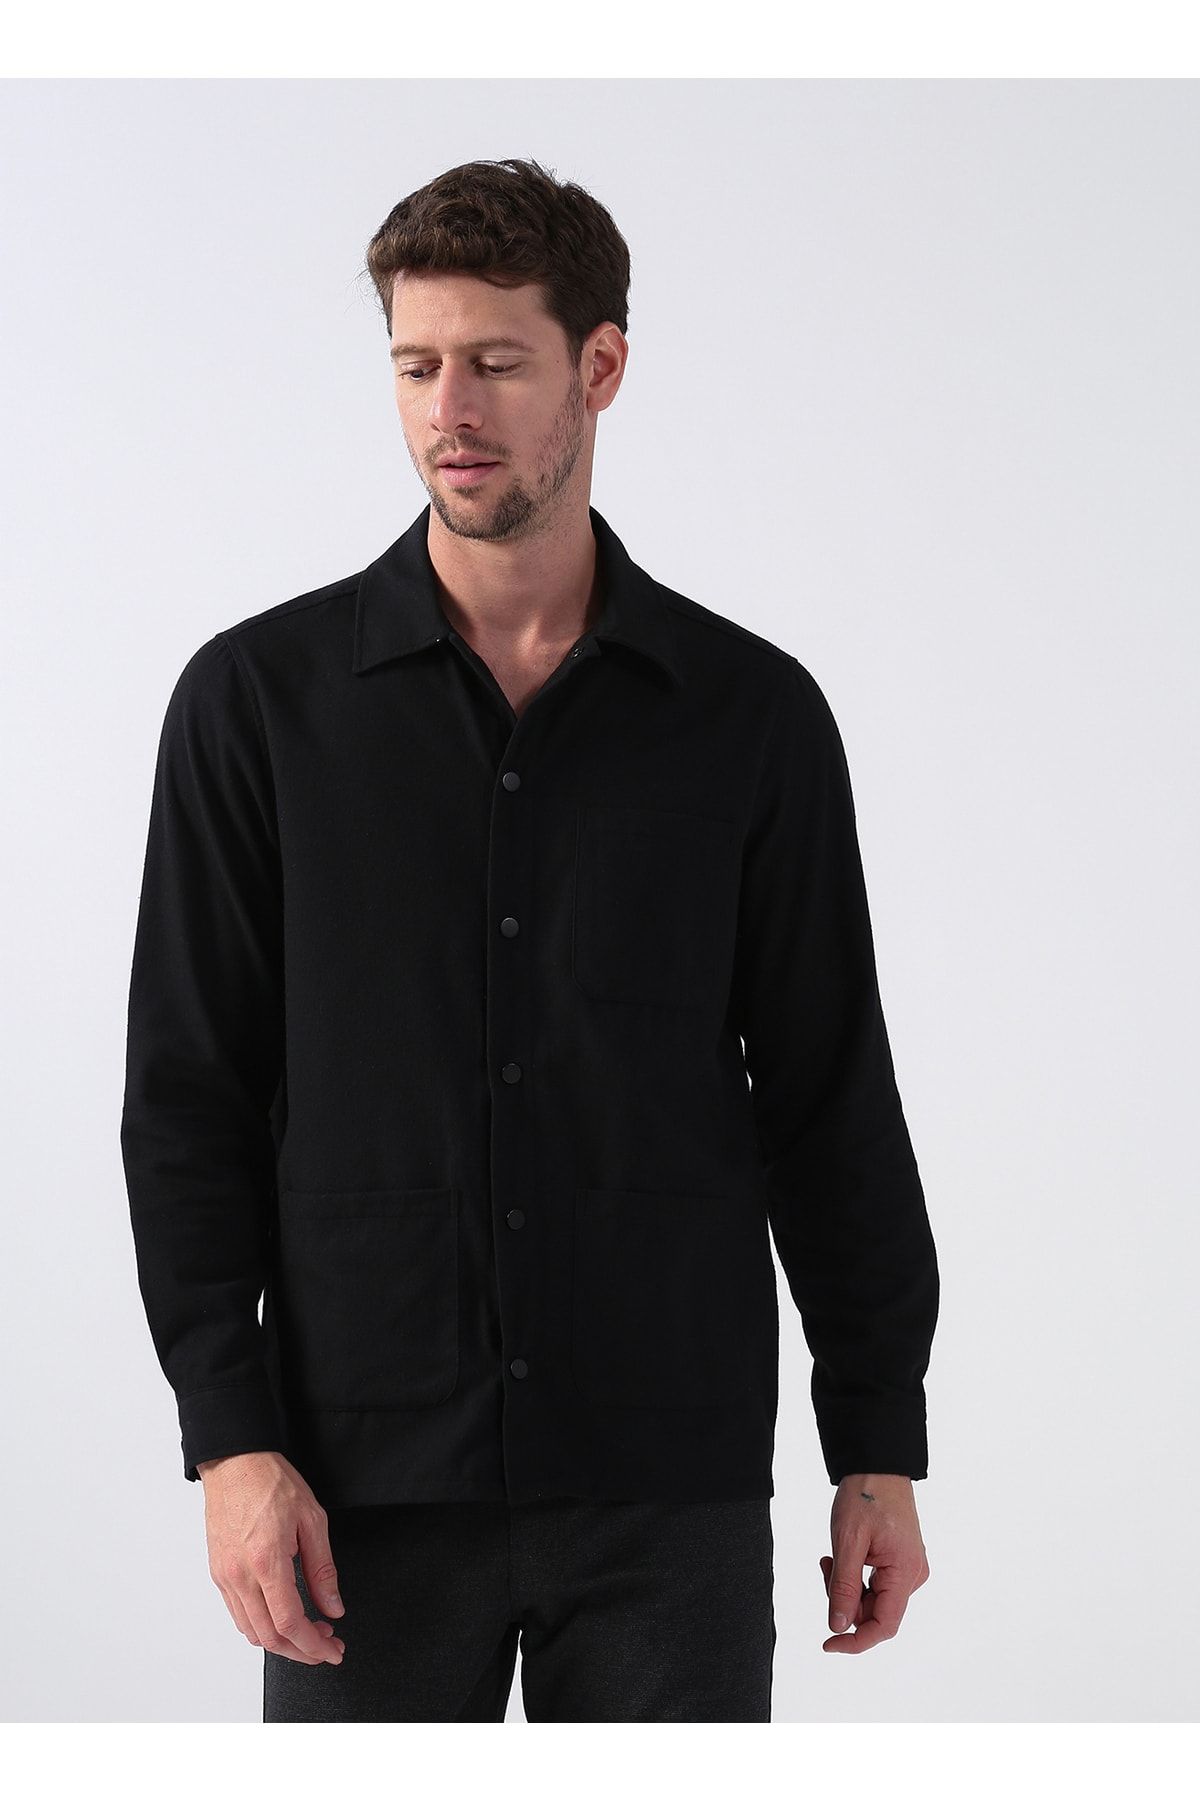 Fabrika Comfort Gömlek Yaka Düz Siyah Erkek Gömlek Cm Clarkk 1